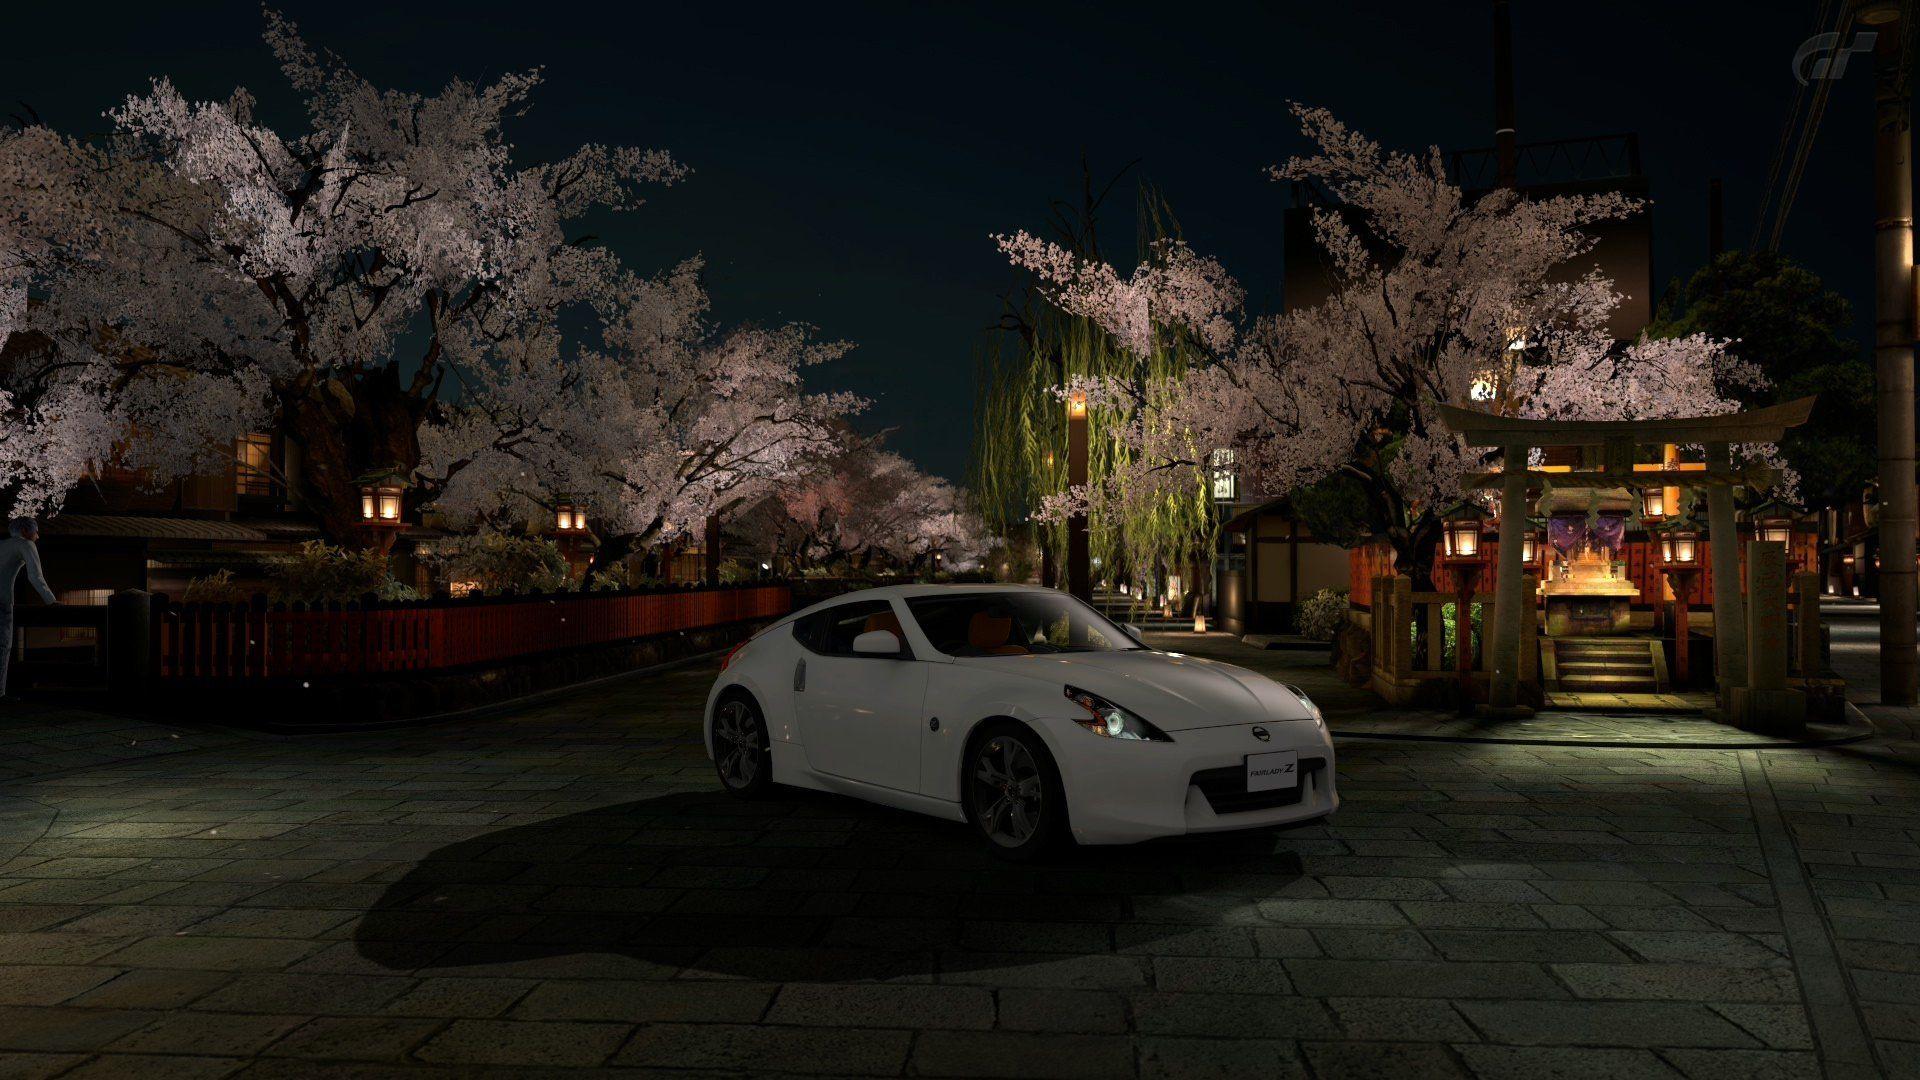 1920x1080 Trò chơi điện tử xe ô tô Nissan 370Z Gran Turismo 5 Playstation 3 JDM Hình nền thị trường nội địa Nhật Bản.  1920x1080